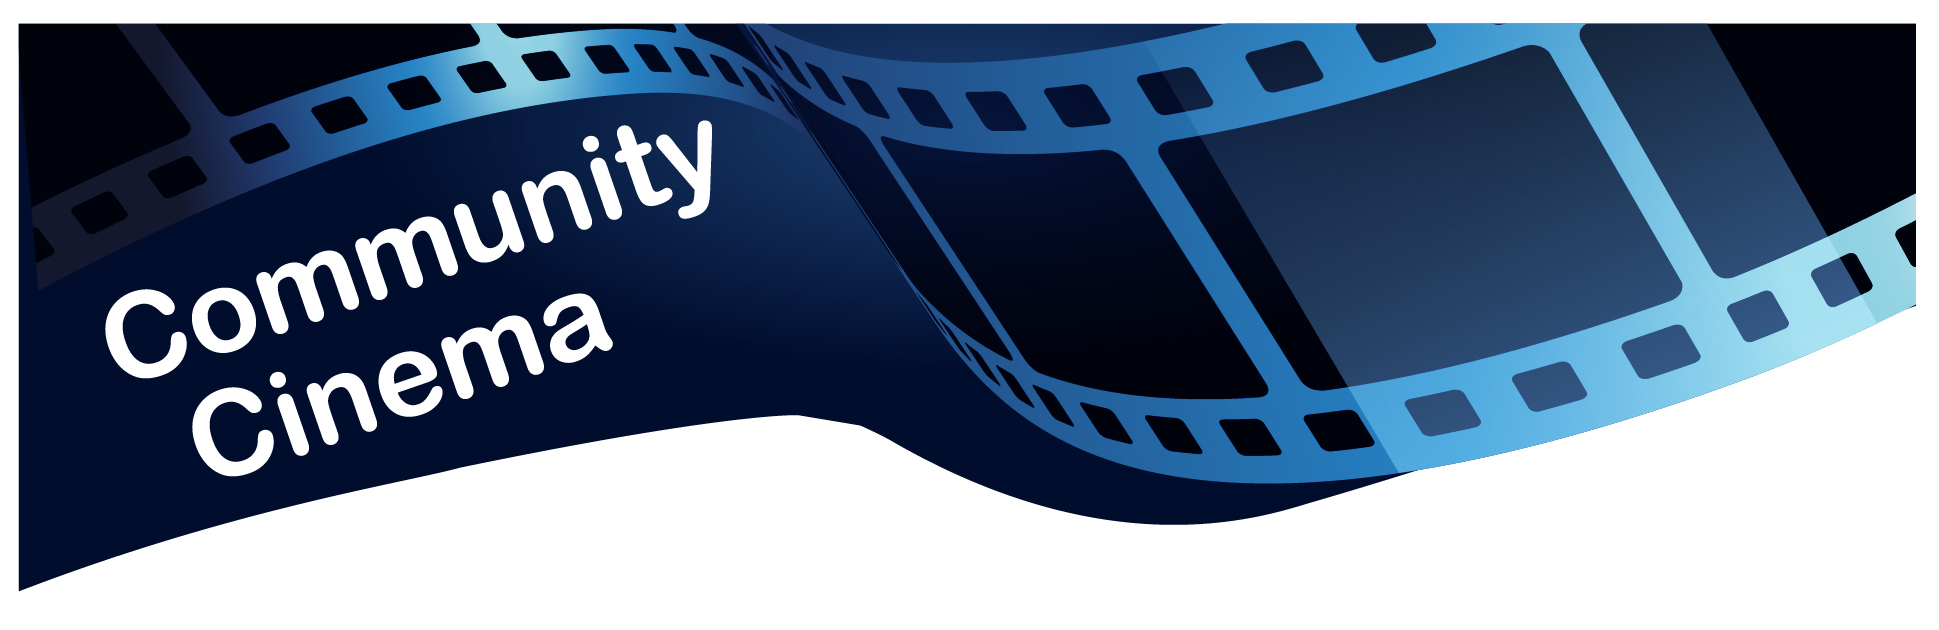 https://www.houghtonvillagehall.org.uk/wp-content/uploads/2022/03/community-cinema-logo.jpg